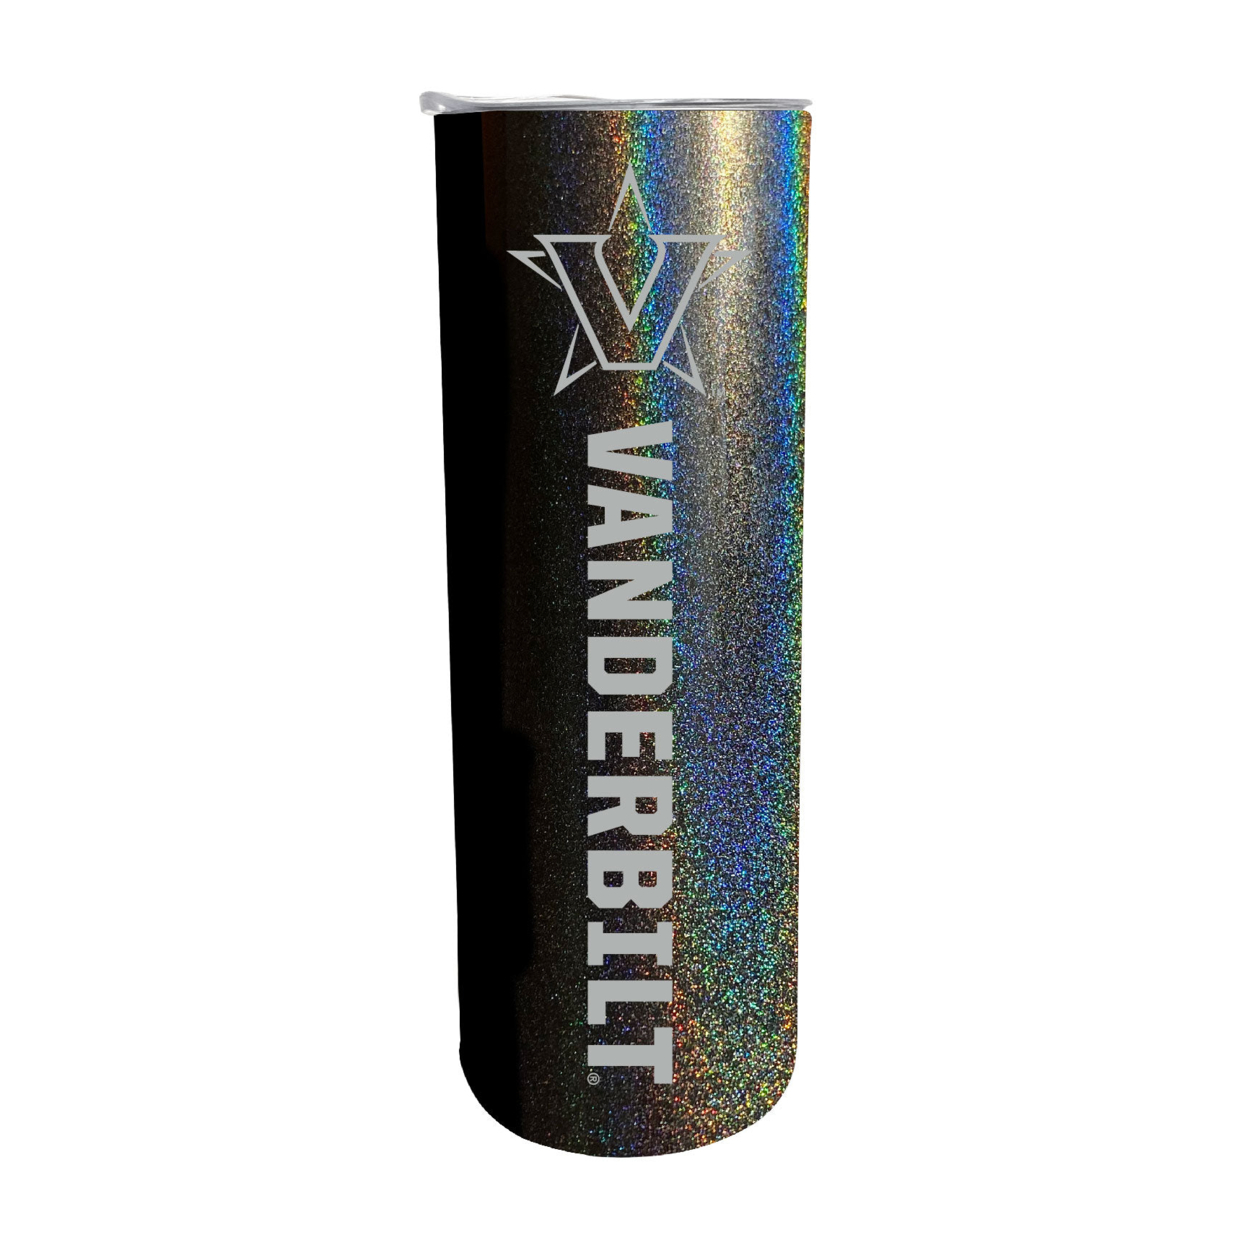 Vanderbilt University 20oz Insulated Stainless Steel Skinny Tumbler - Black